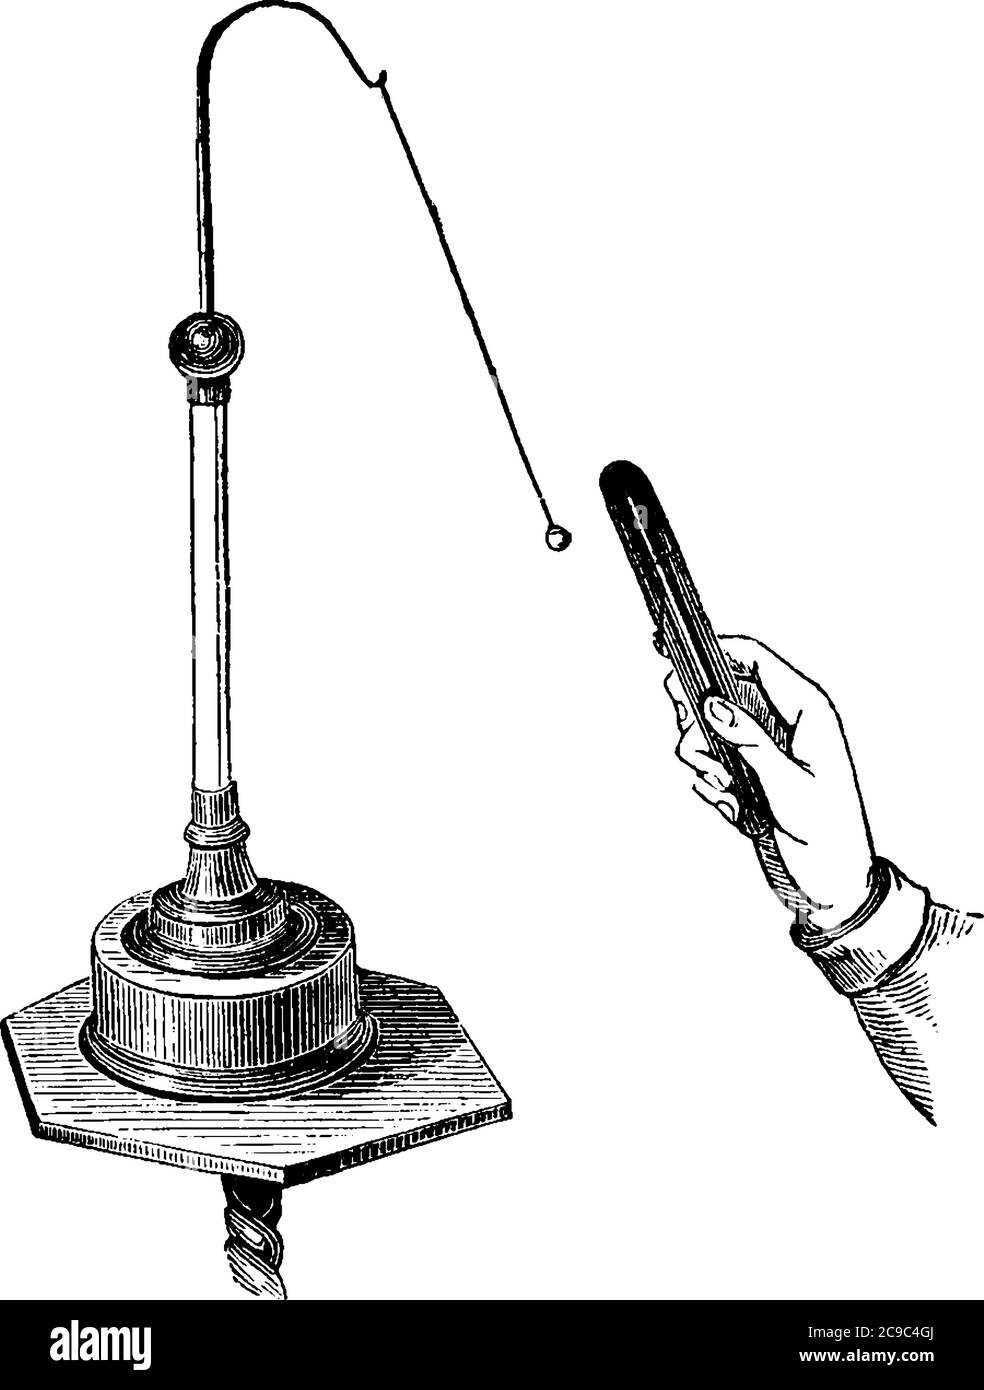 Une main avec bâton démontrant électricité statique, dessin de ligne vintage ou illustration de gravure. Illustration de Vecteur